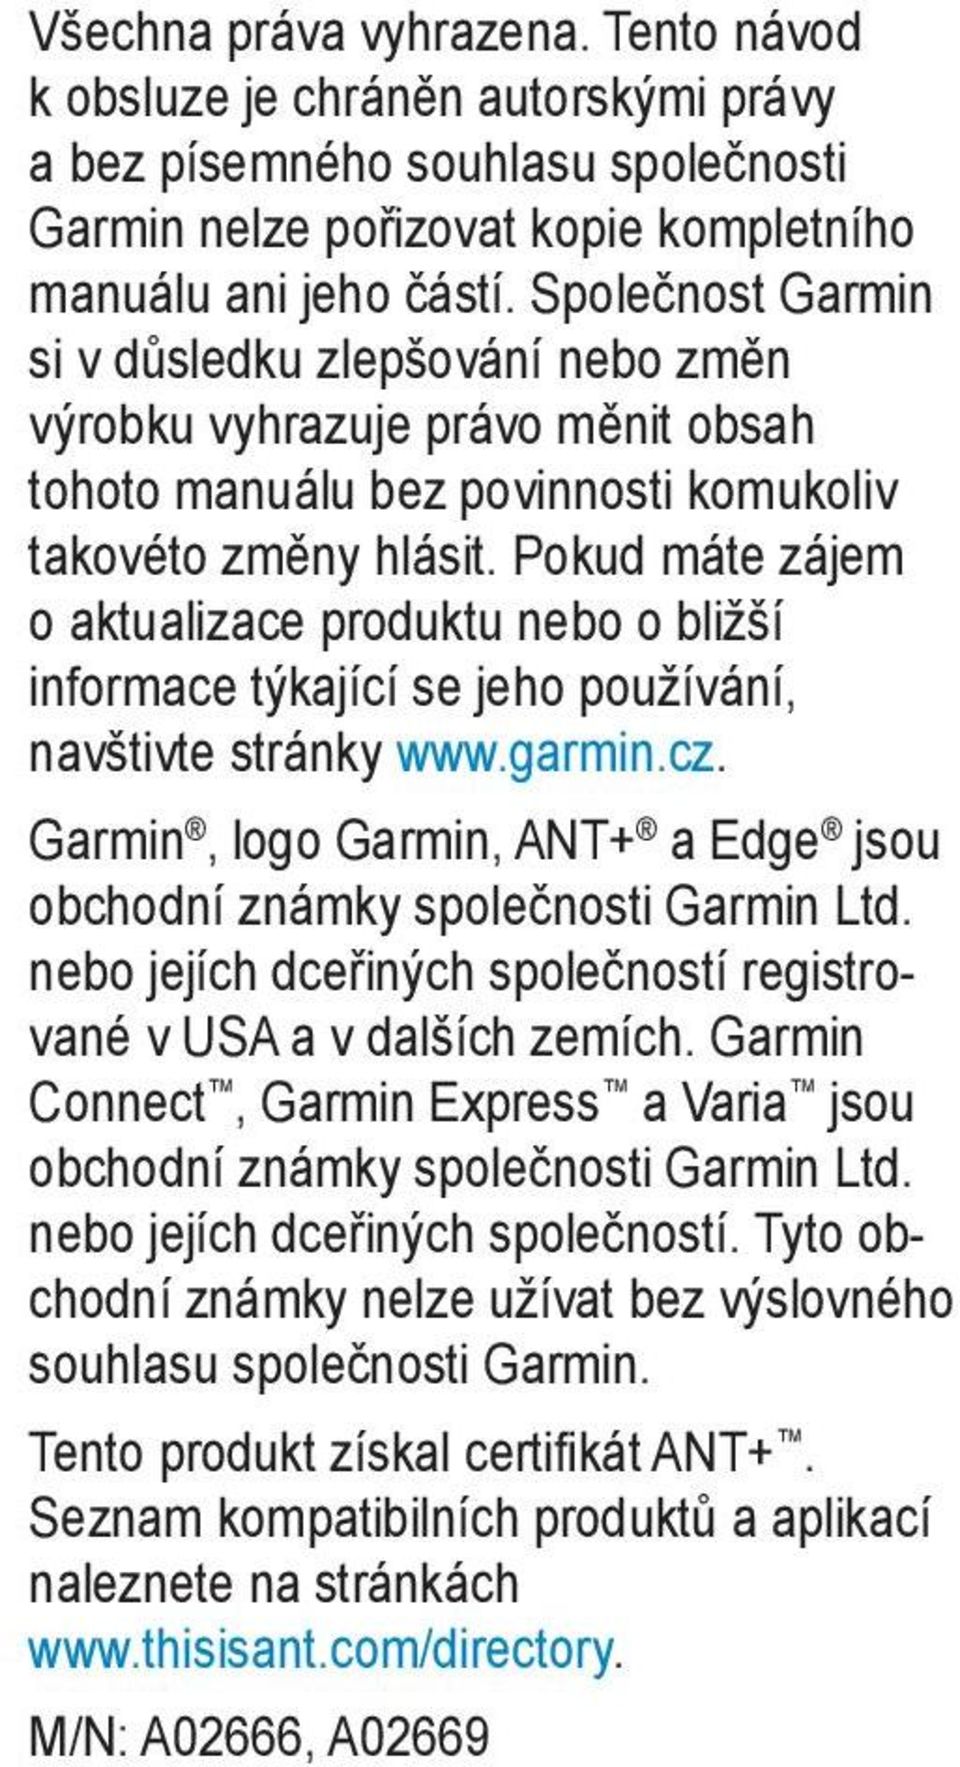 Pokud máte zájem o aktualizace produktu nebo o bližší informace týkající se jeho používání, navštivte stránky www.garmin.cz.